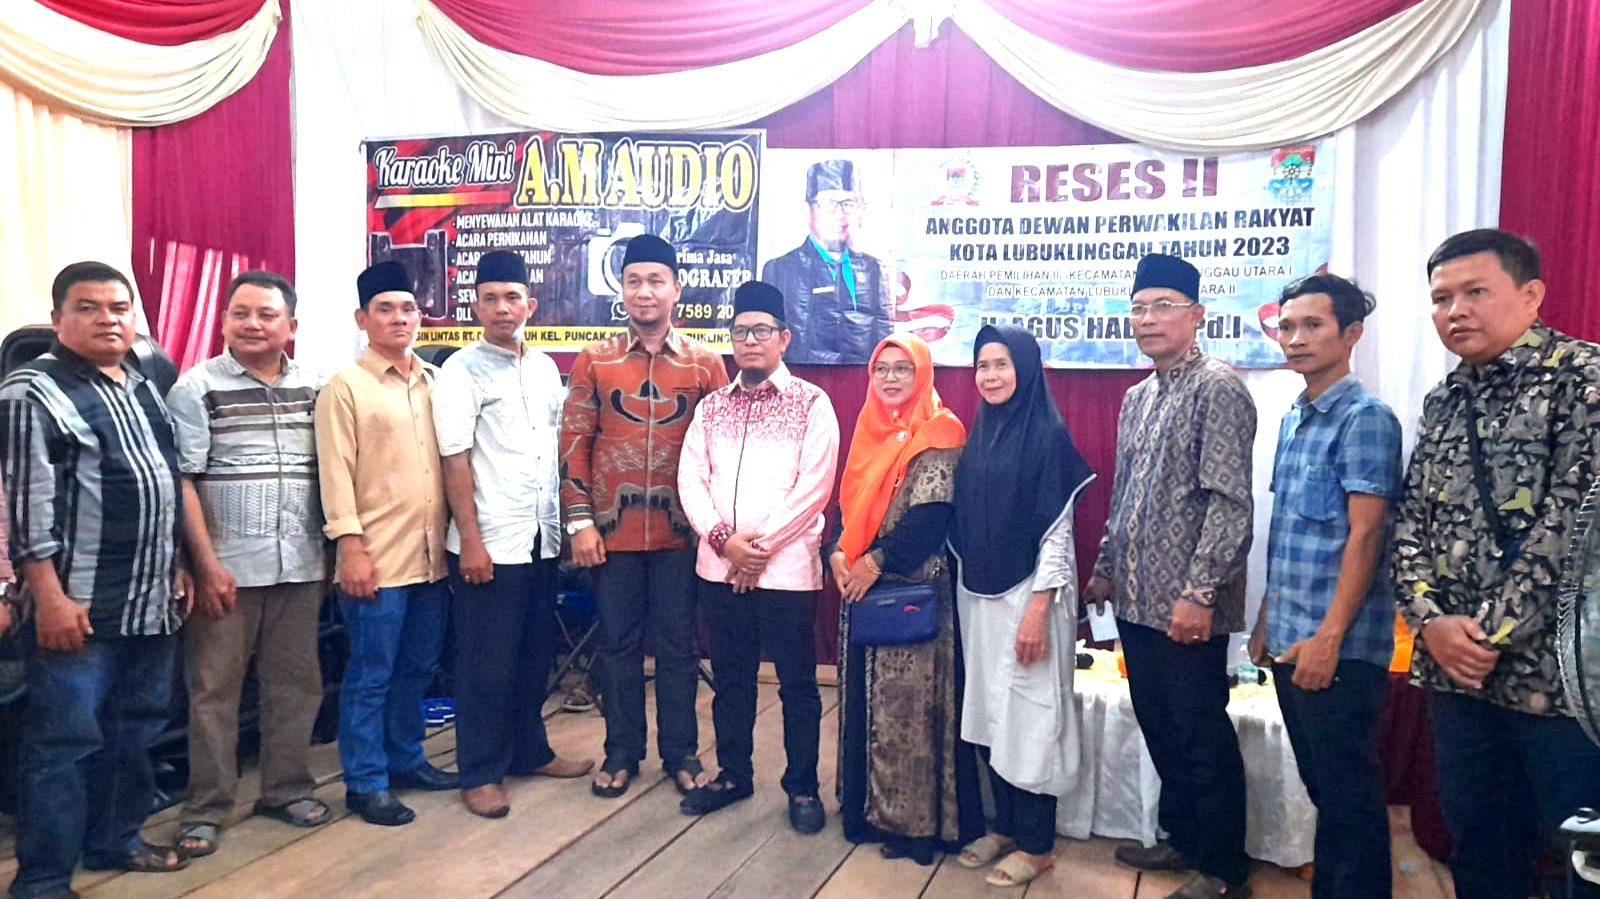 Reses II Anggota DPRD Kota Lubuklinggau H Agus Hadi Berjuang Bersama Rakyat